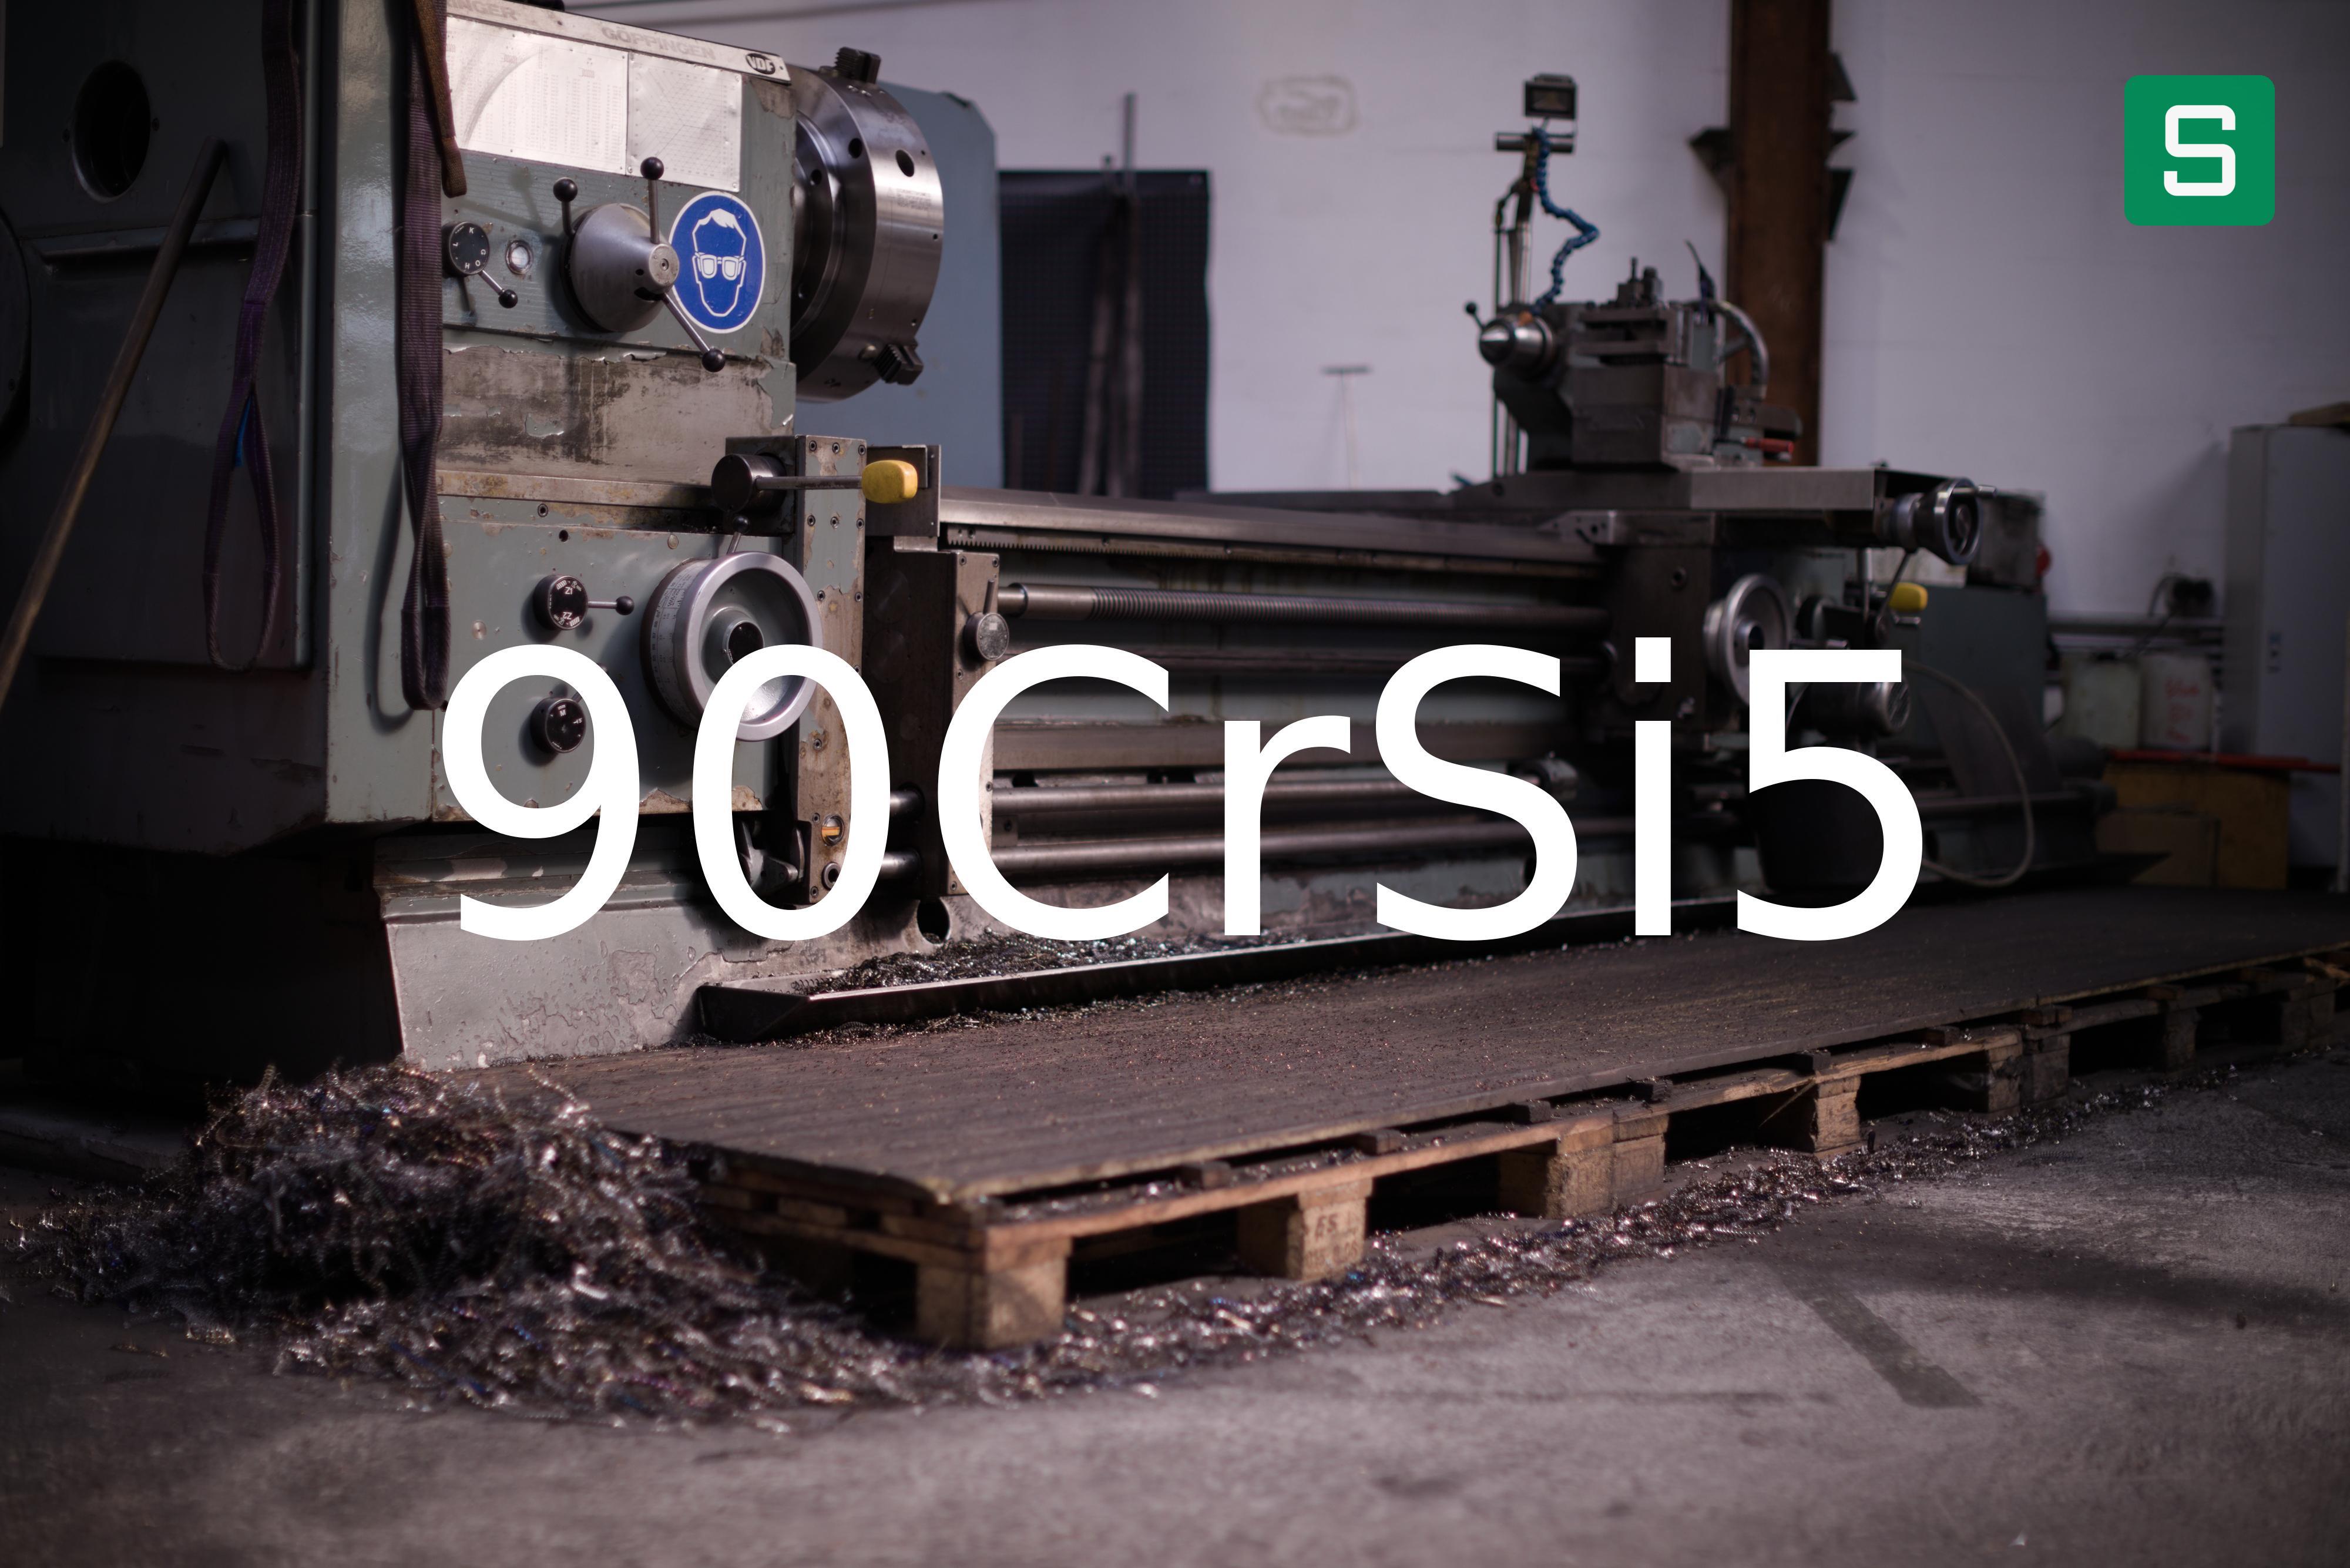 Steel Material: 90CrSi5